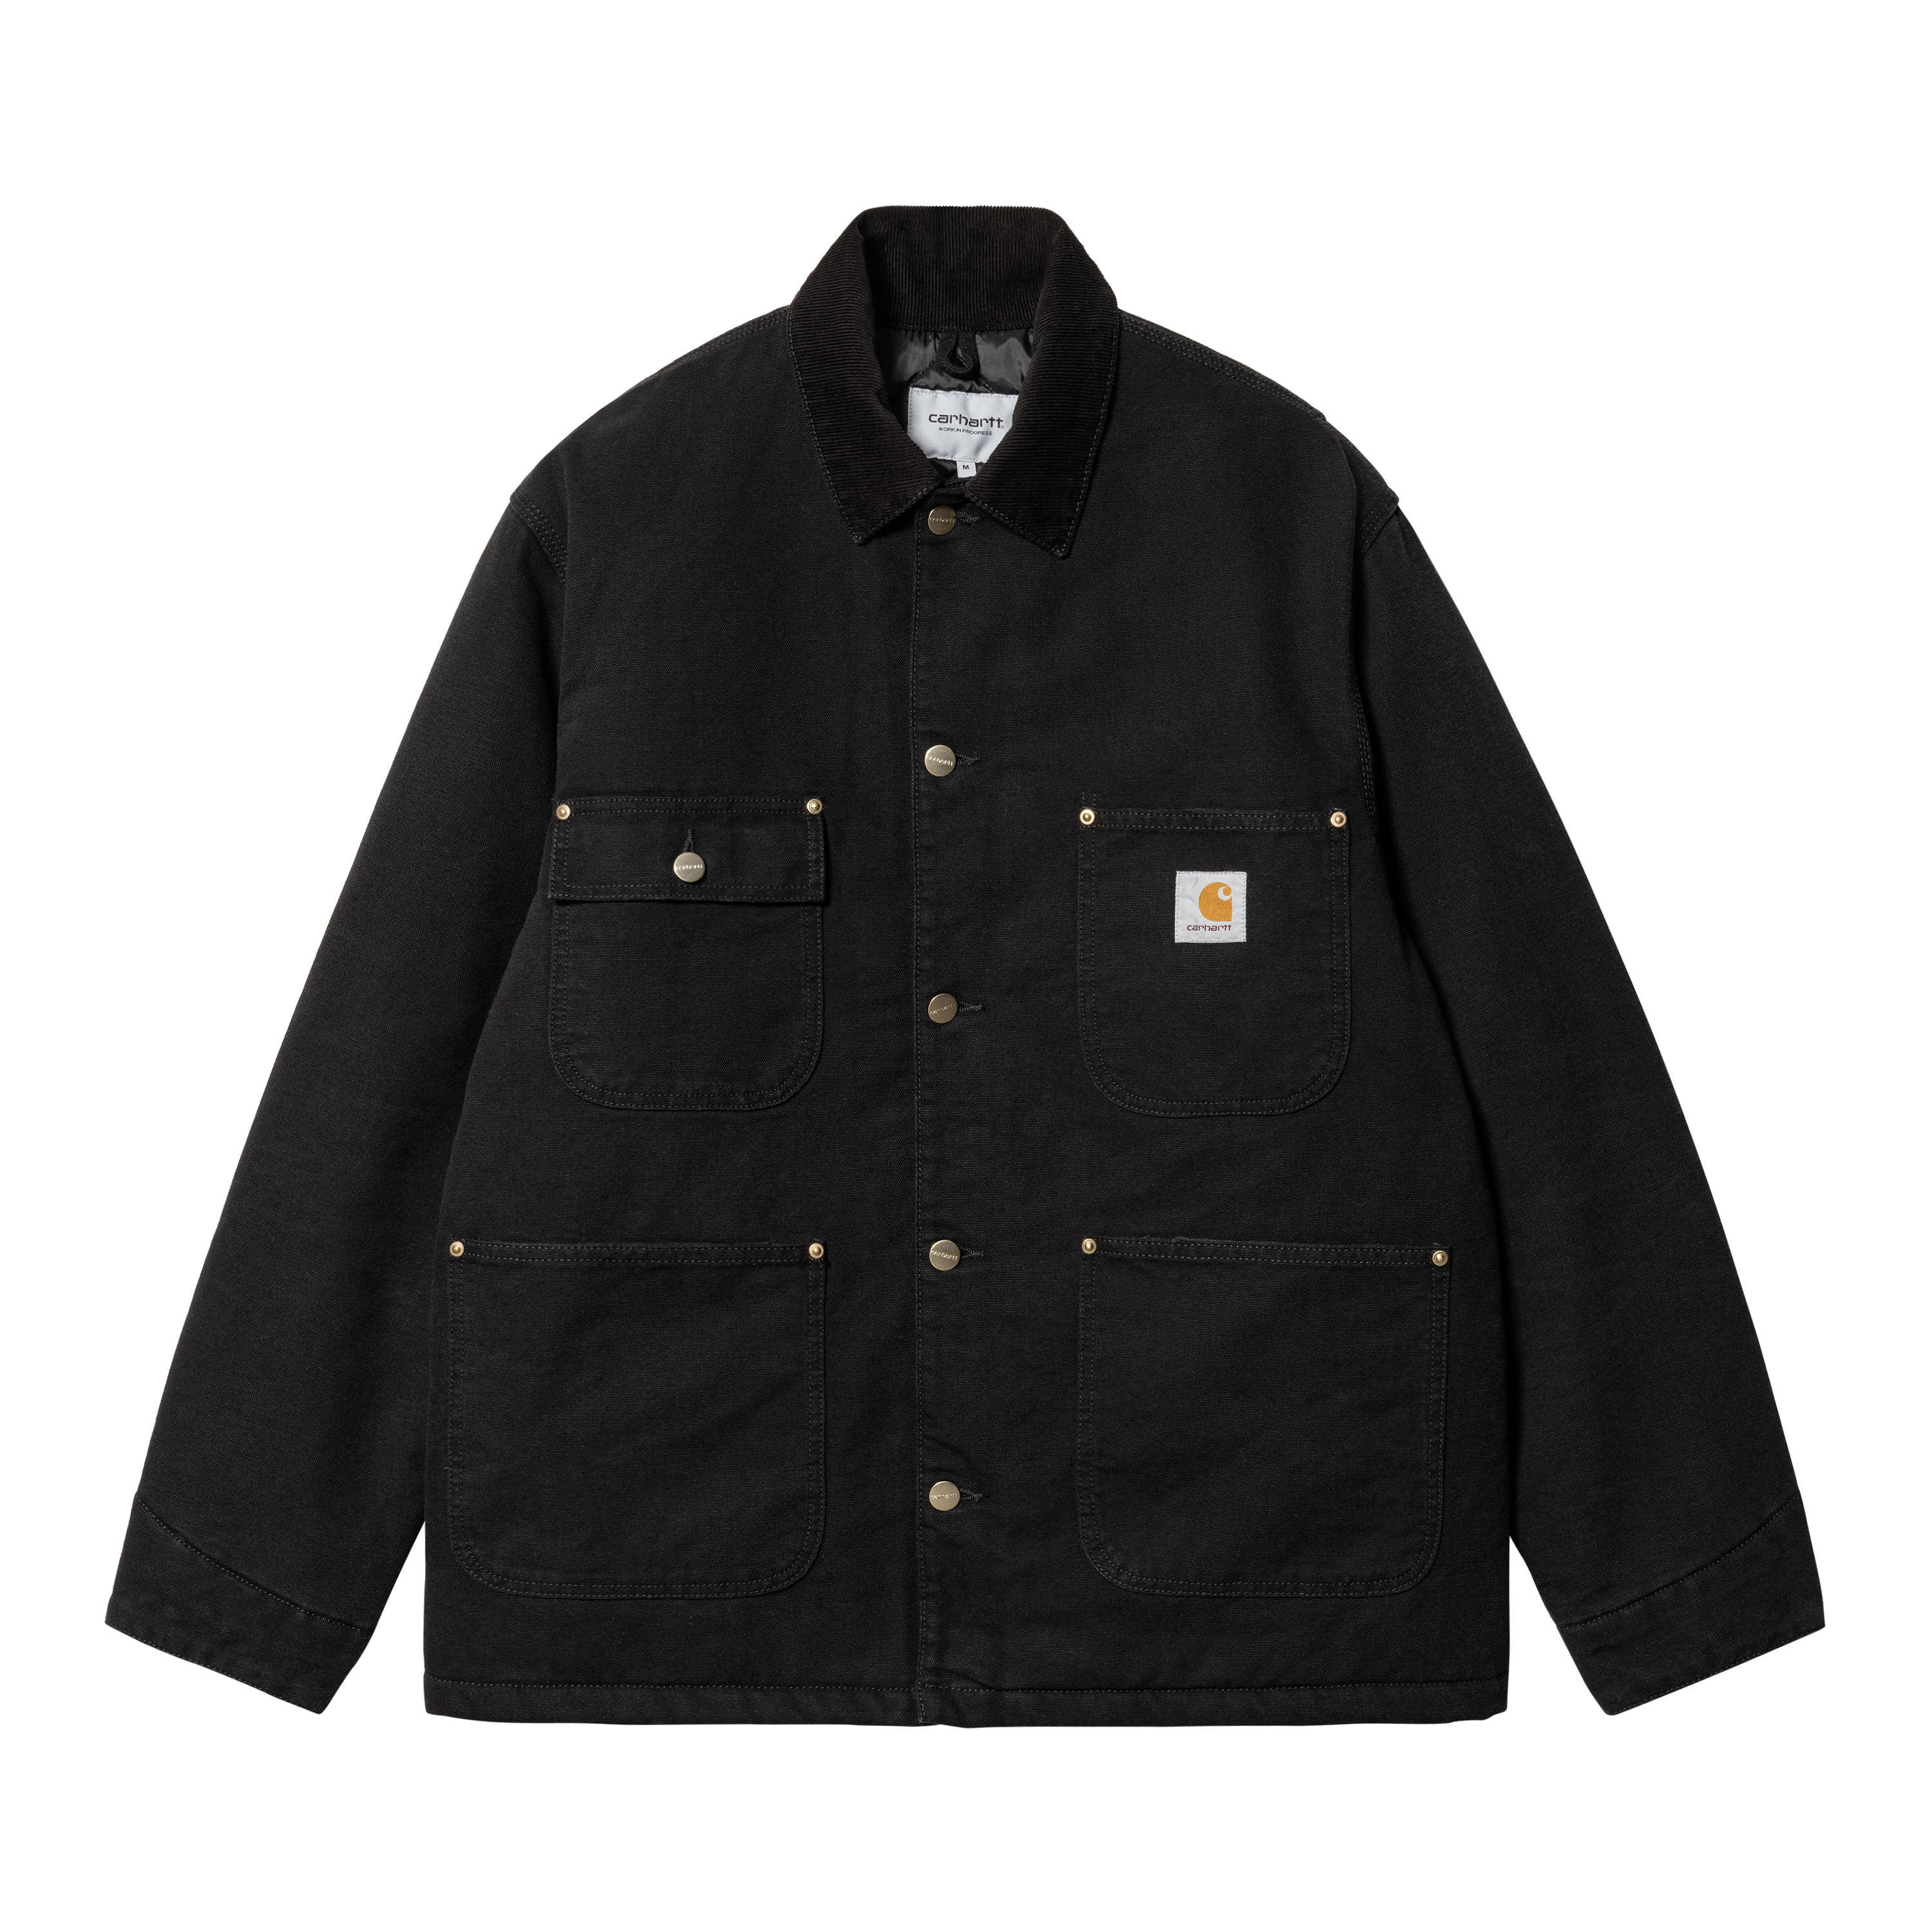 Carhartt WIP OG Chore Coat in Black